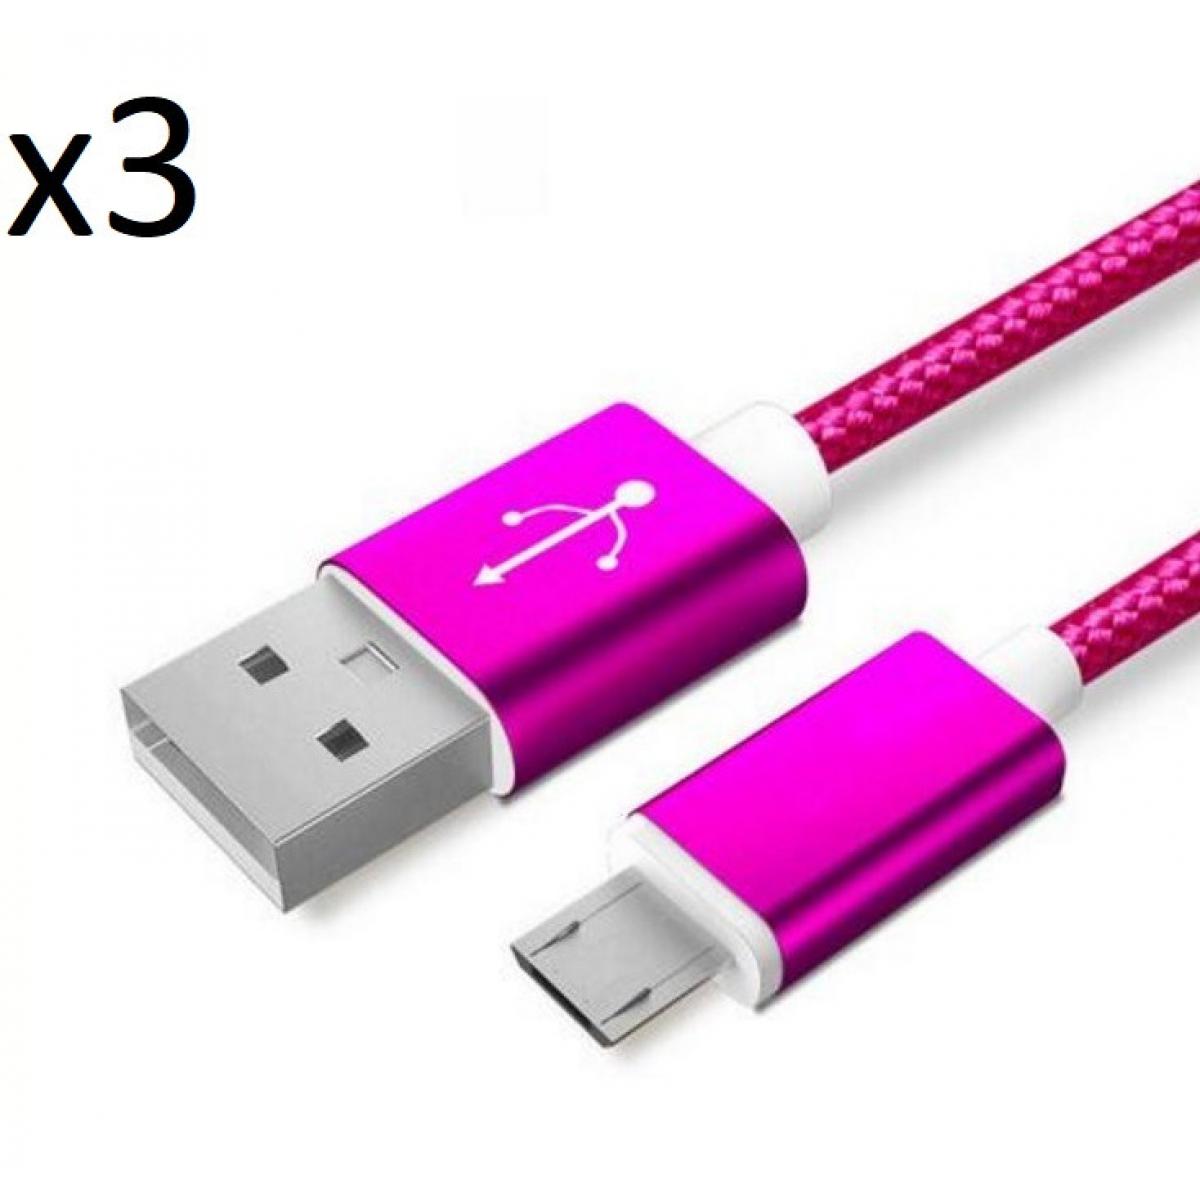 Shot - Pack de 3 Cables Metal Nylon Micro USB pour "XIAOMI Redmi 9A" Smartphone Android Chargeur (ROSE BONBON) - Chargeur secteur téléphone